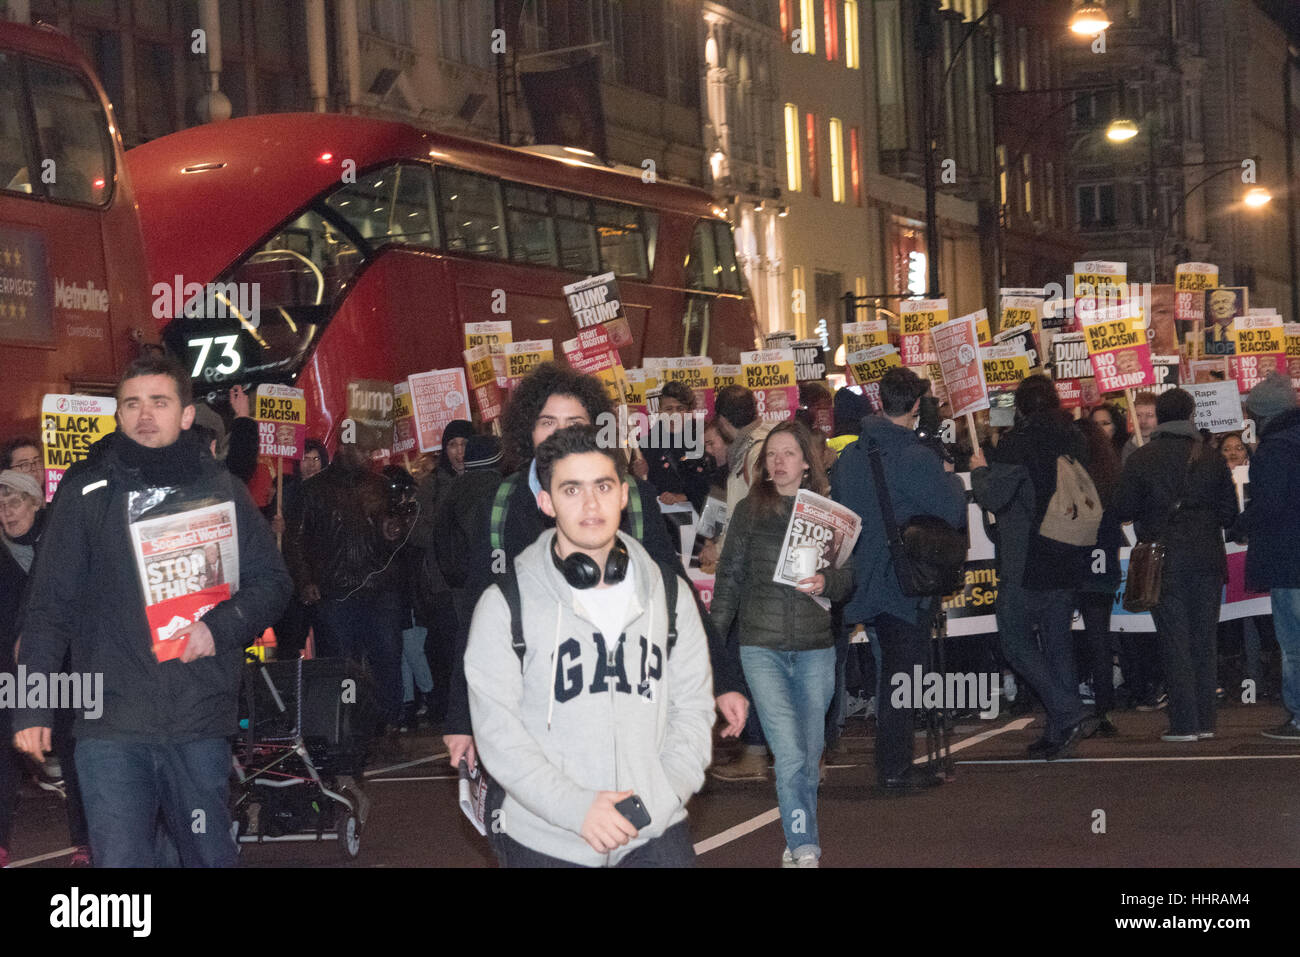 Londres, Royaume-Uni. Le 20 janvier, 2017. Les manifestants occupent une jonction de route à l'Atout anti-manifestation et une marche devant l'ambassade américaine à Londres. Crédit : Ian Davidson/Alamy Live News Banque D'Images